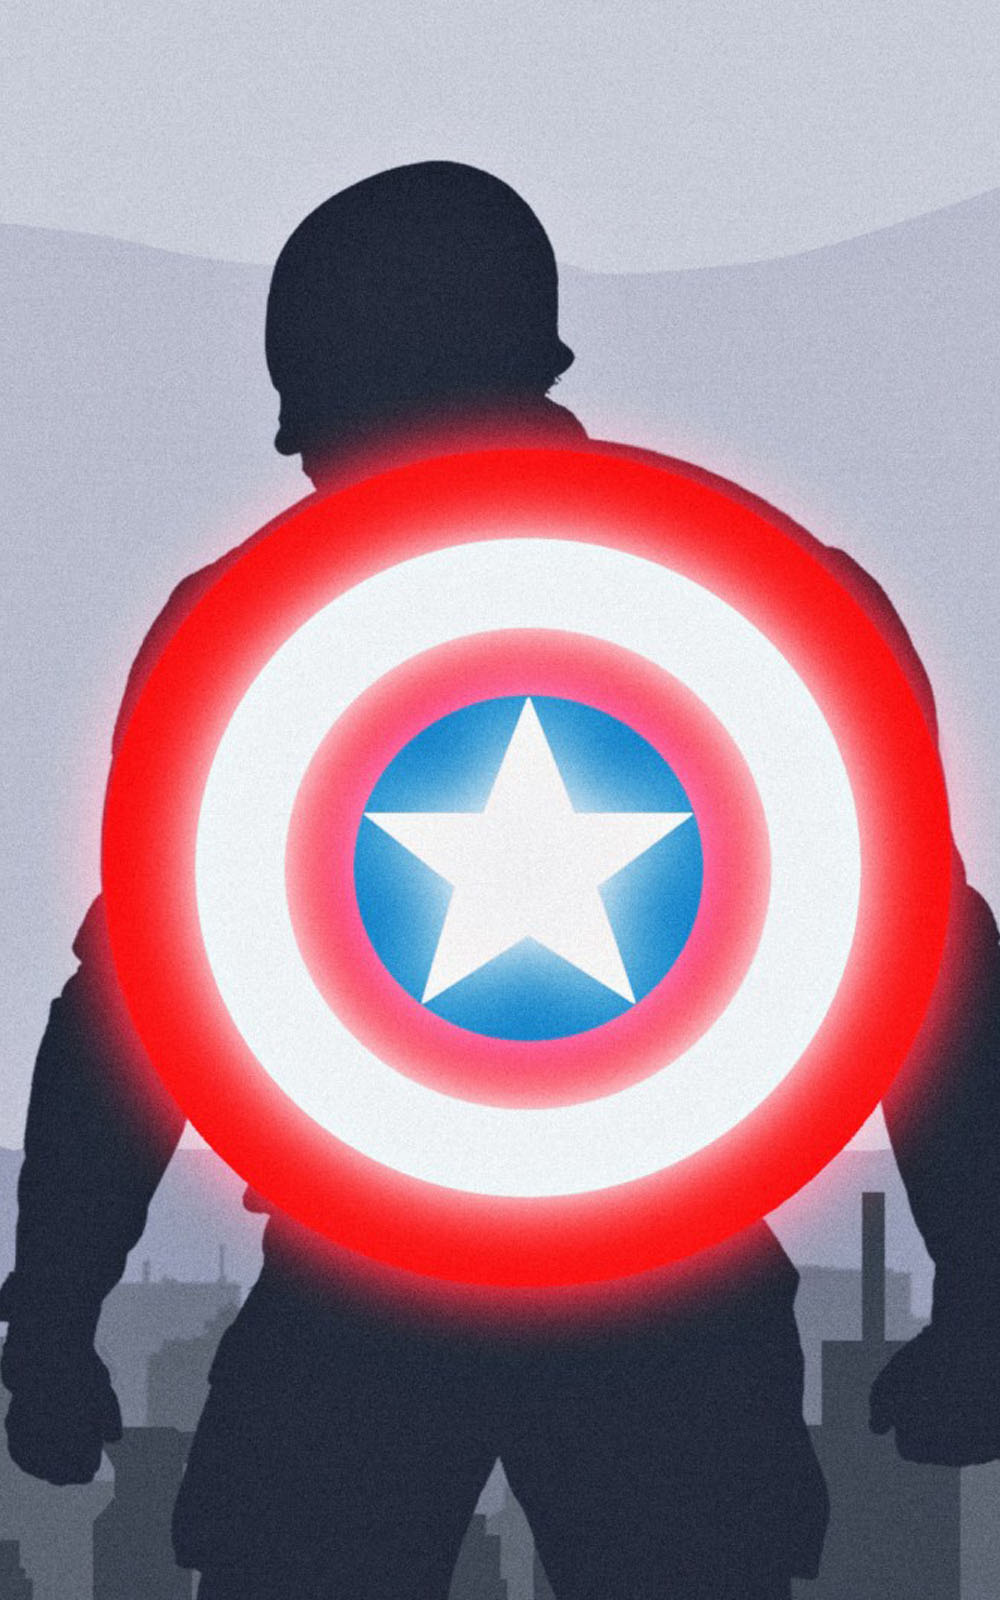 モバイル用キャプテン・アメリカの壁紙,キャプテン・アメリカ,赤,スーパーヒーロー,架空の人物,ヒーロー